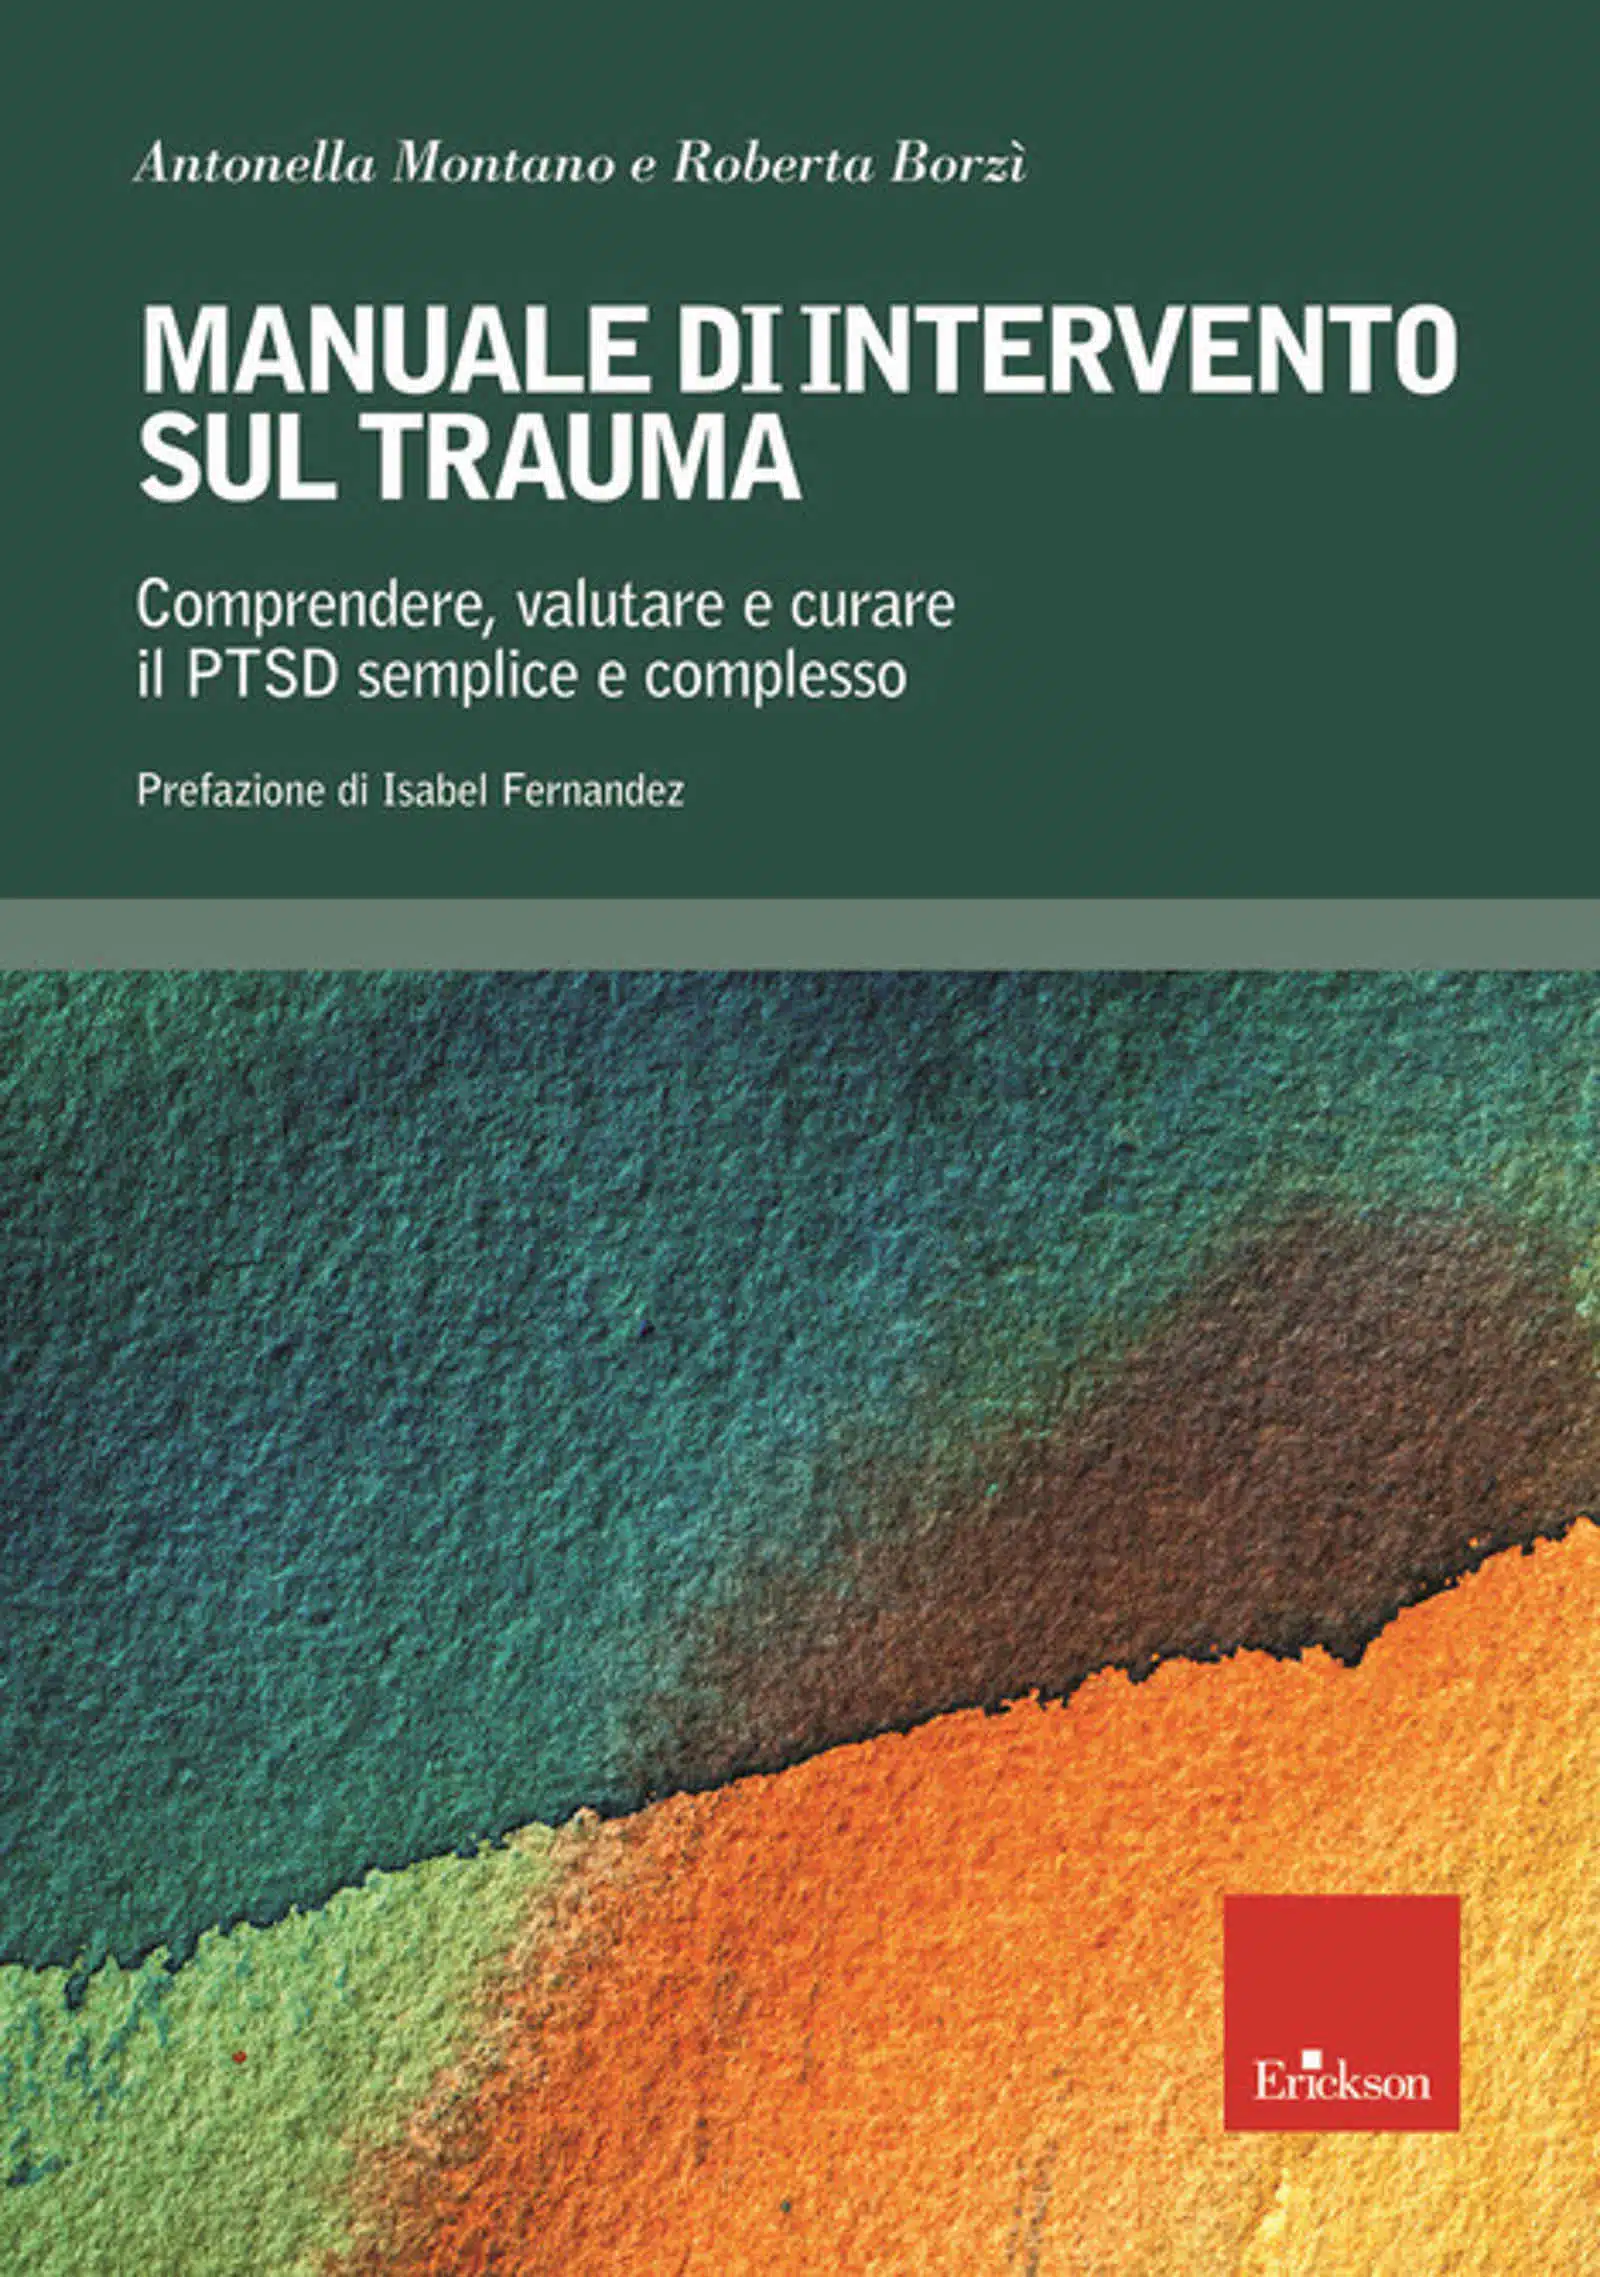 Manuale di intervento sul trauma 2019 Recensione del libro featured